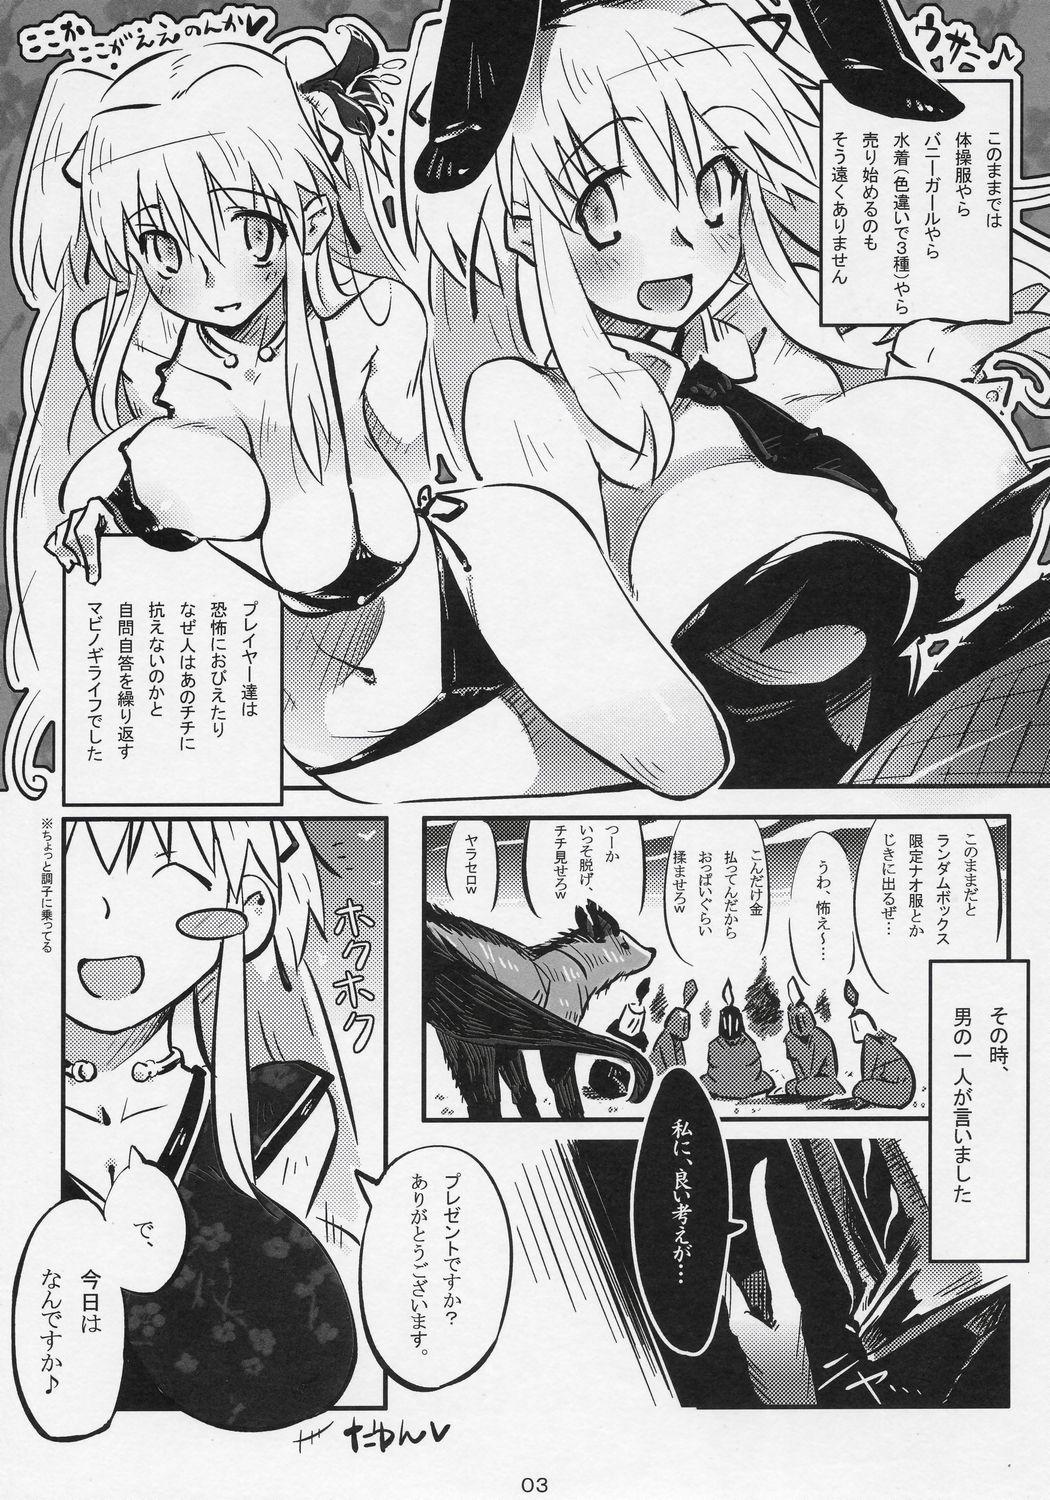 Spying Hadaka no Nao-sama - Mabinogi Chat - Page 3